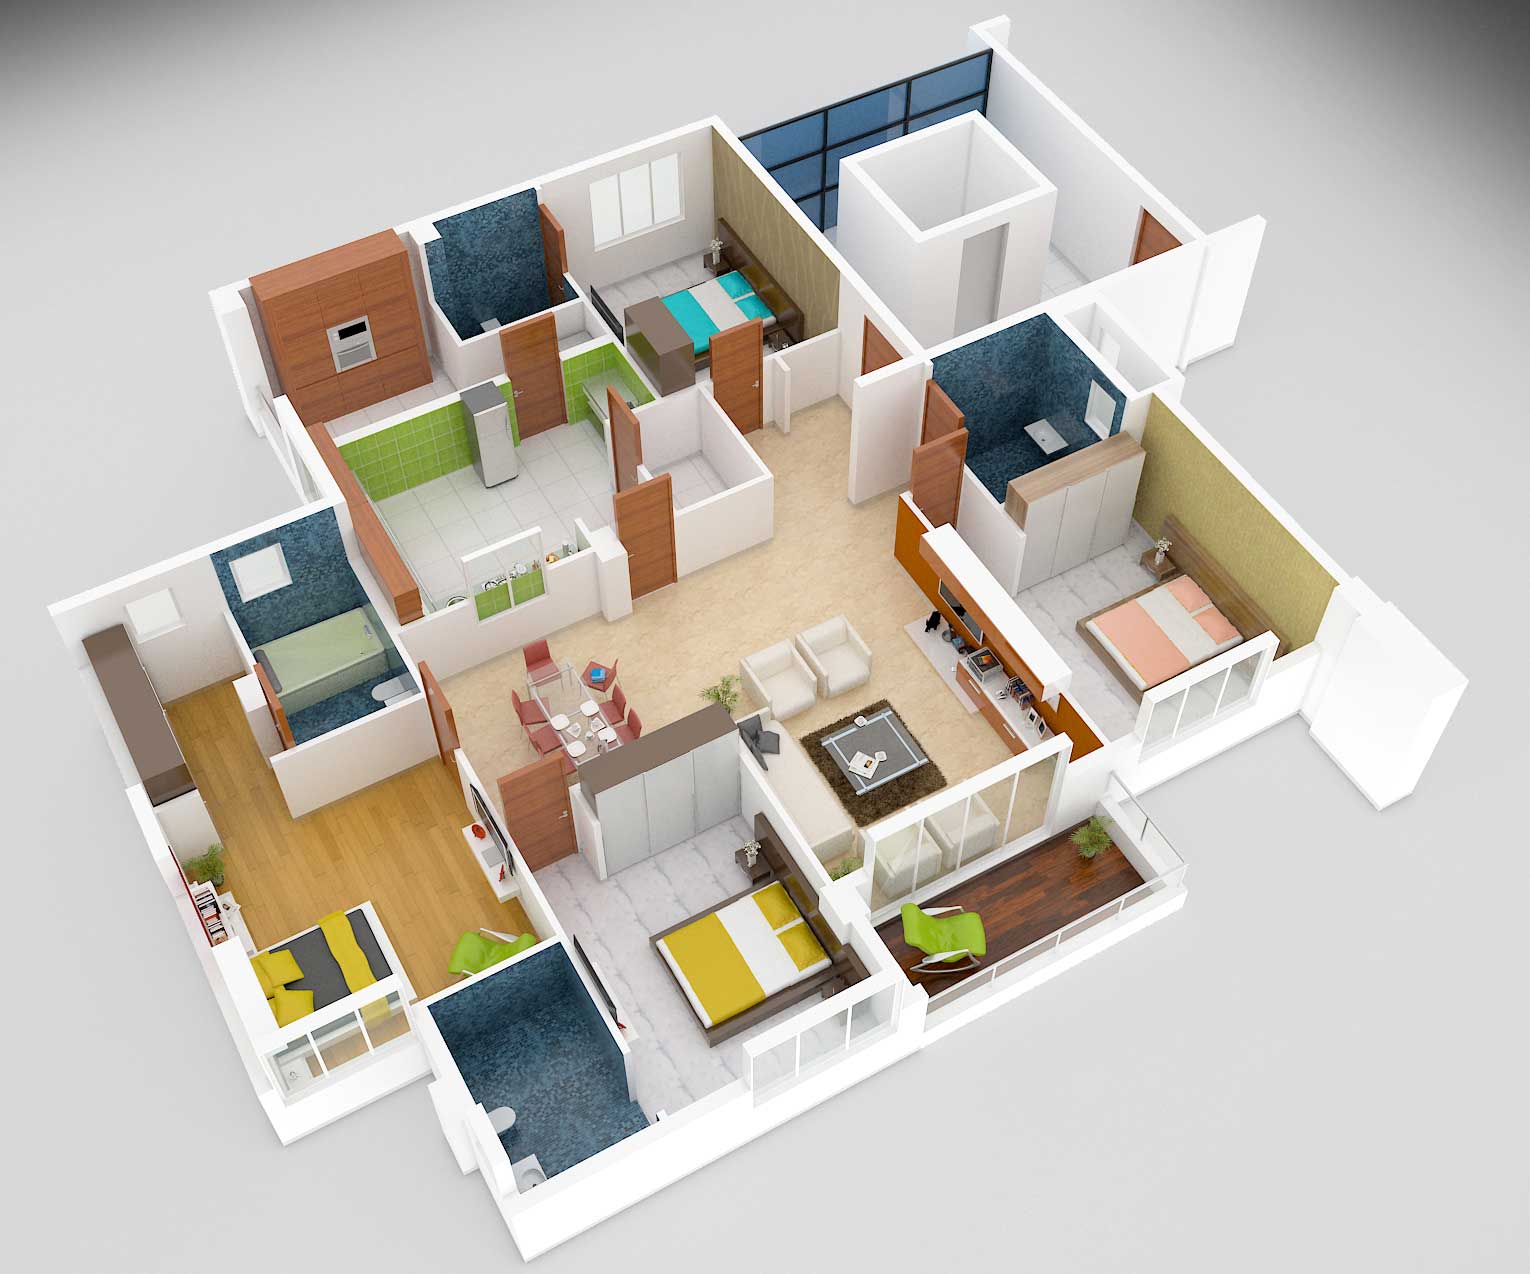 4BHK floorplan of johari apartments